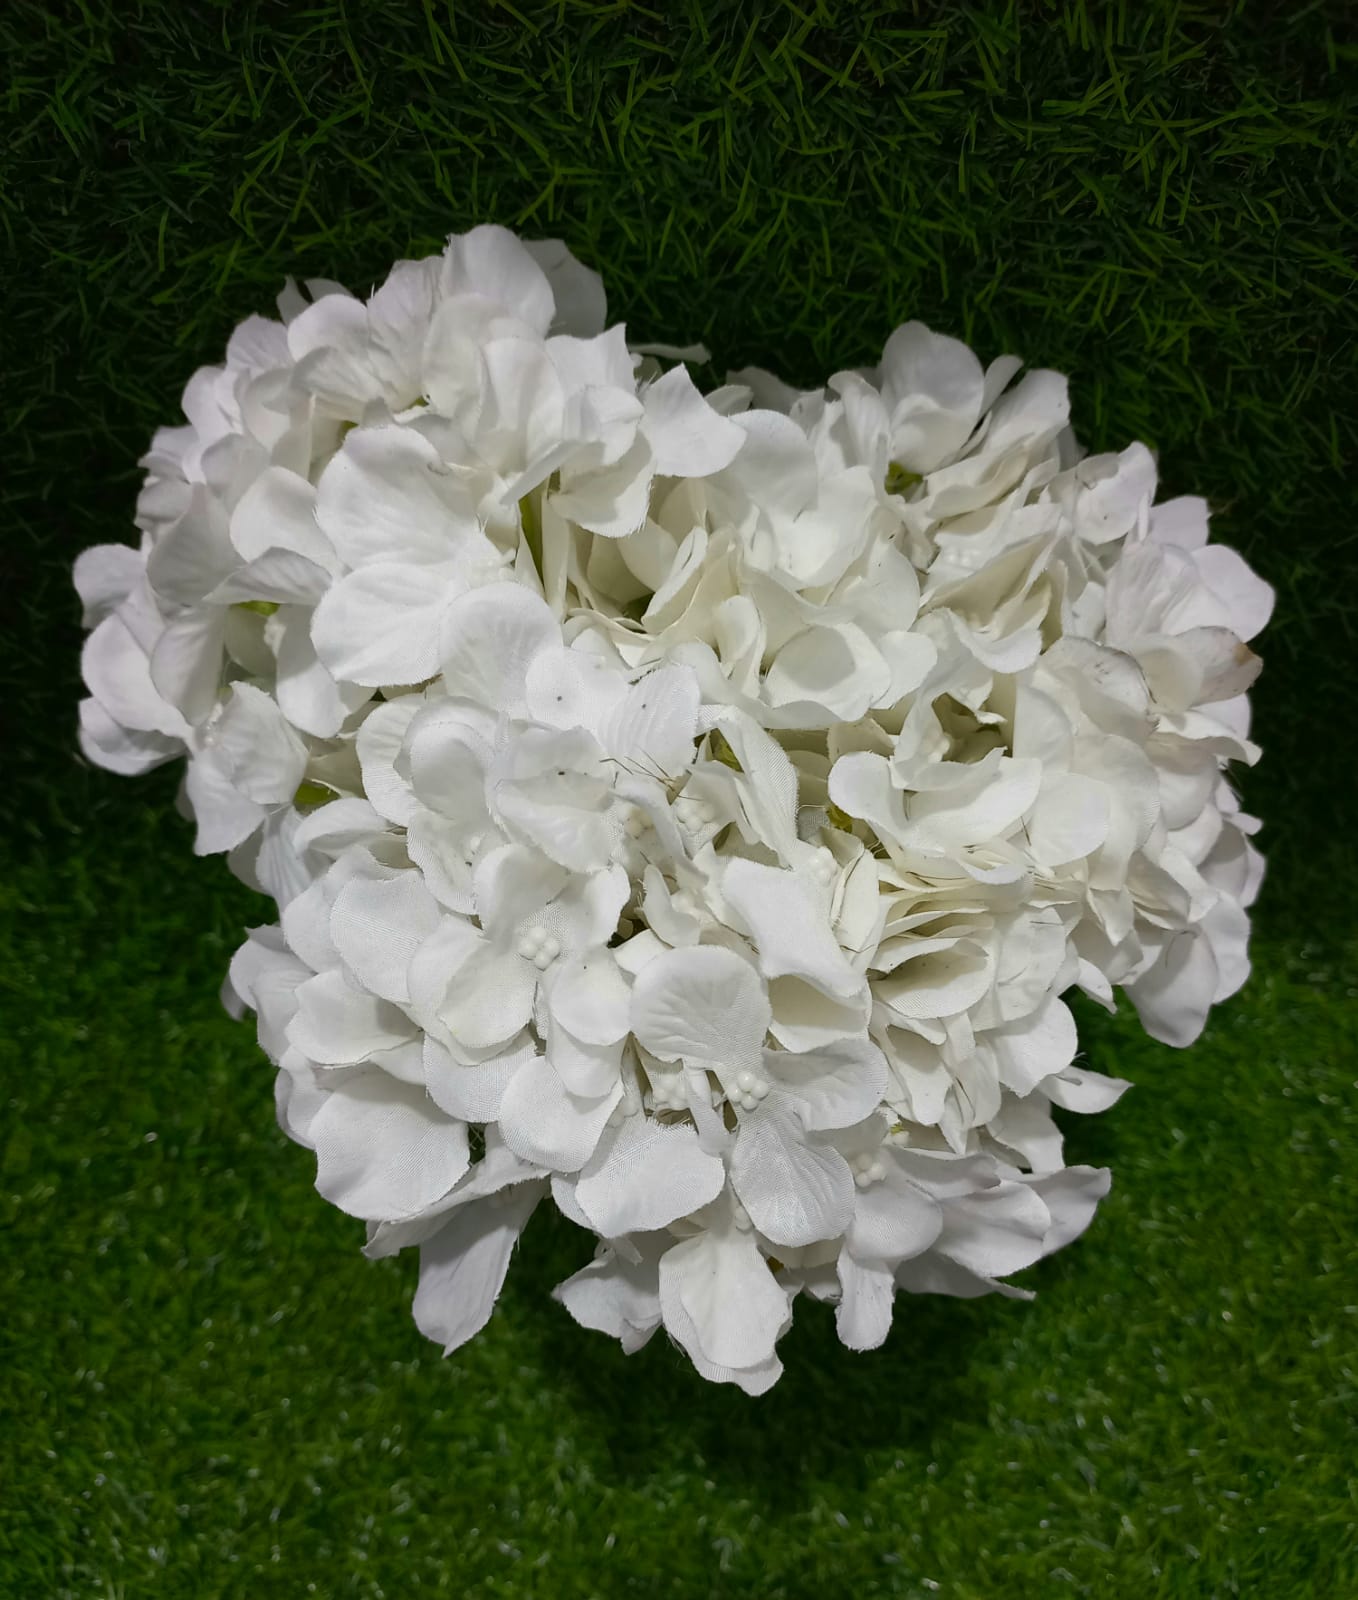 White hydrangea flower